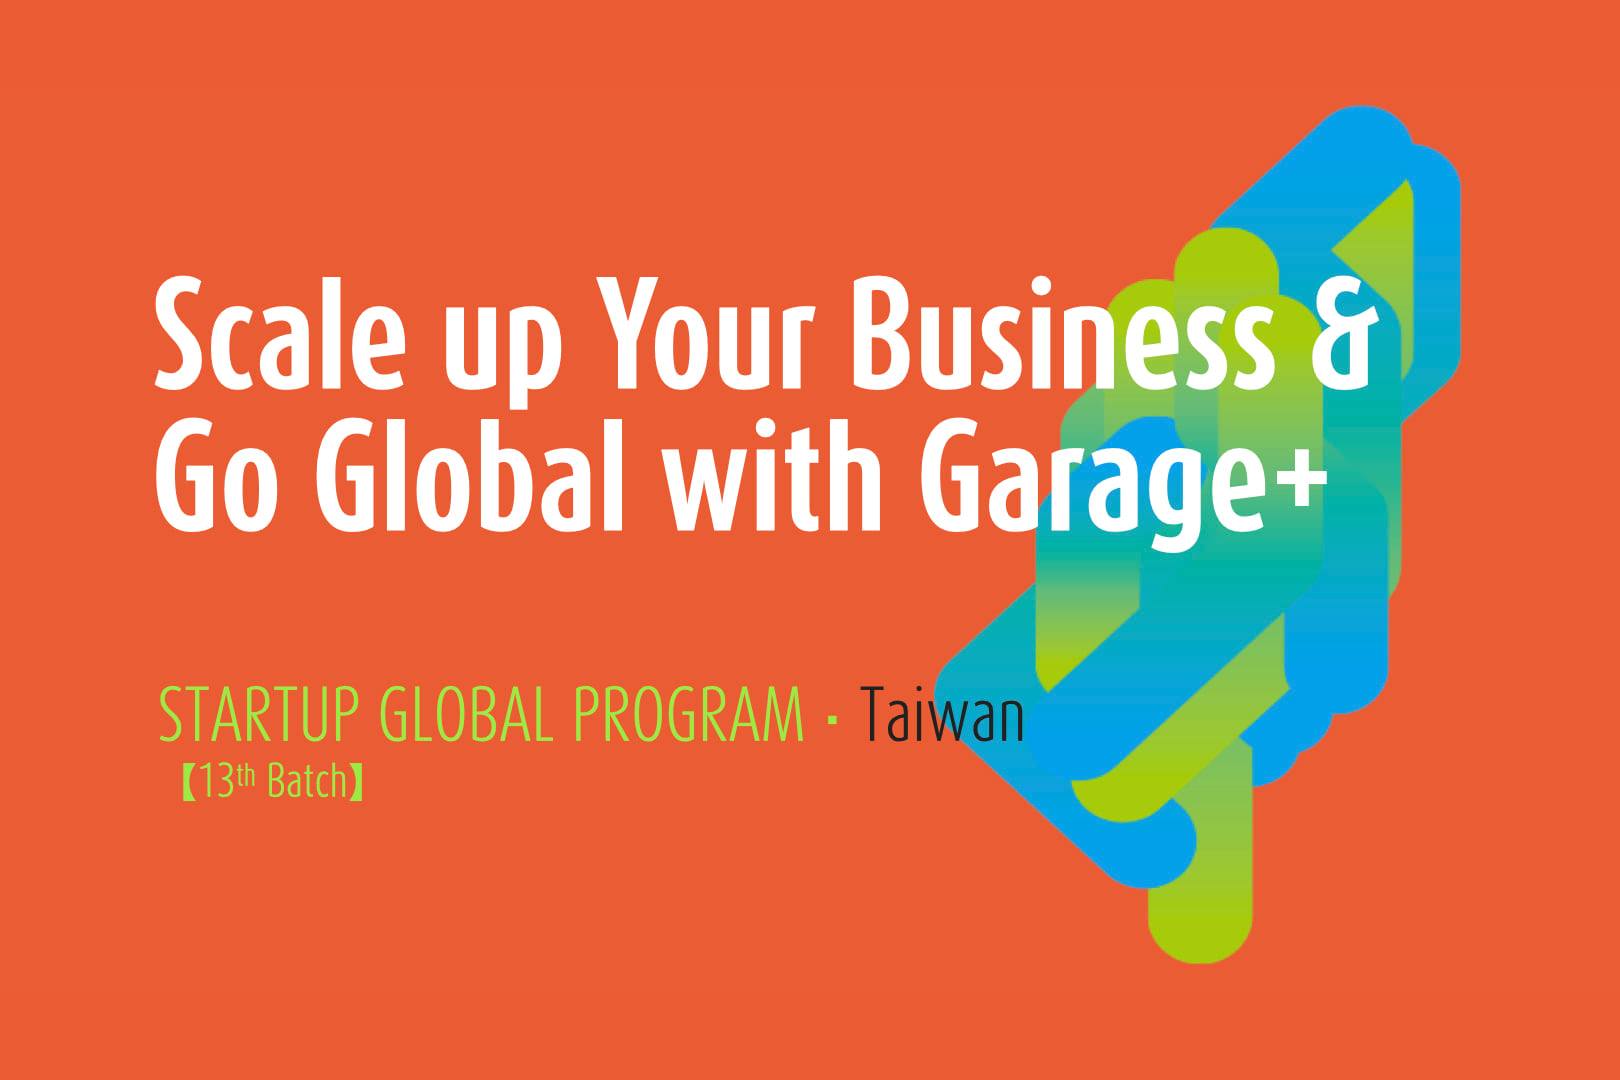 [競賽]【Garage+】Scale up Your Business & Go Global with Garage+ Program